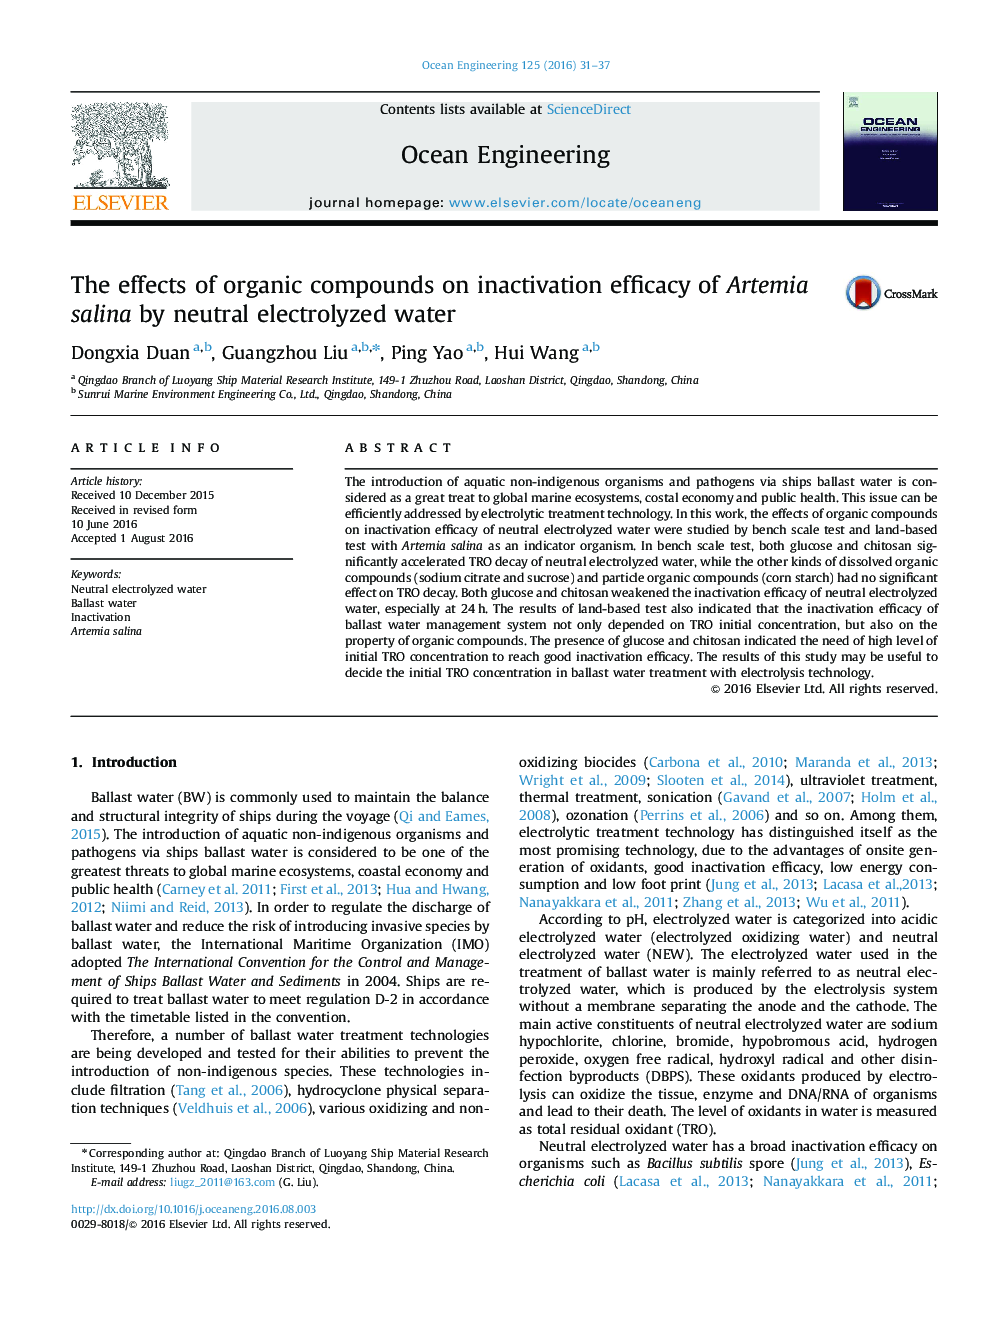 اثرات ترکیبات ارگانیک بر اثر غیر فعال سازی آرتمیا سالینا با استفاده از آب الکترولیز خنثی 